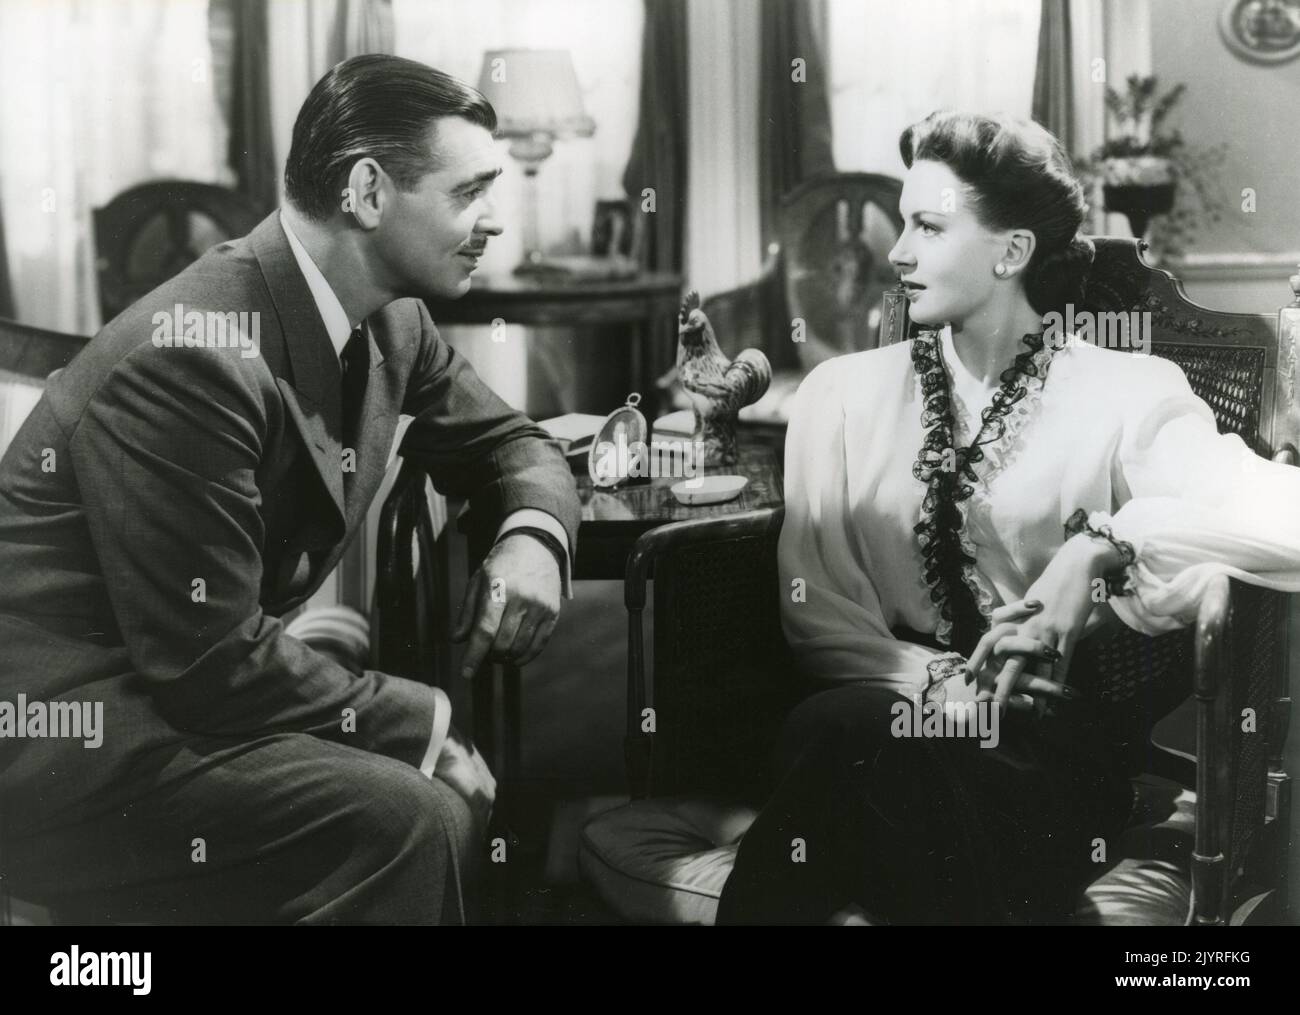 L'attore americano Clark Gable e l'attrice Deborah Kerr nel film The Hucksters, USA 1947 Foto Stock